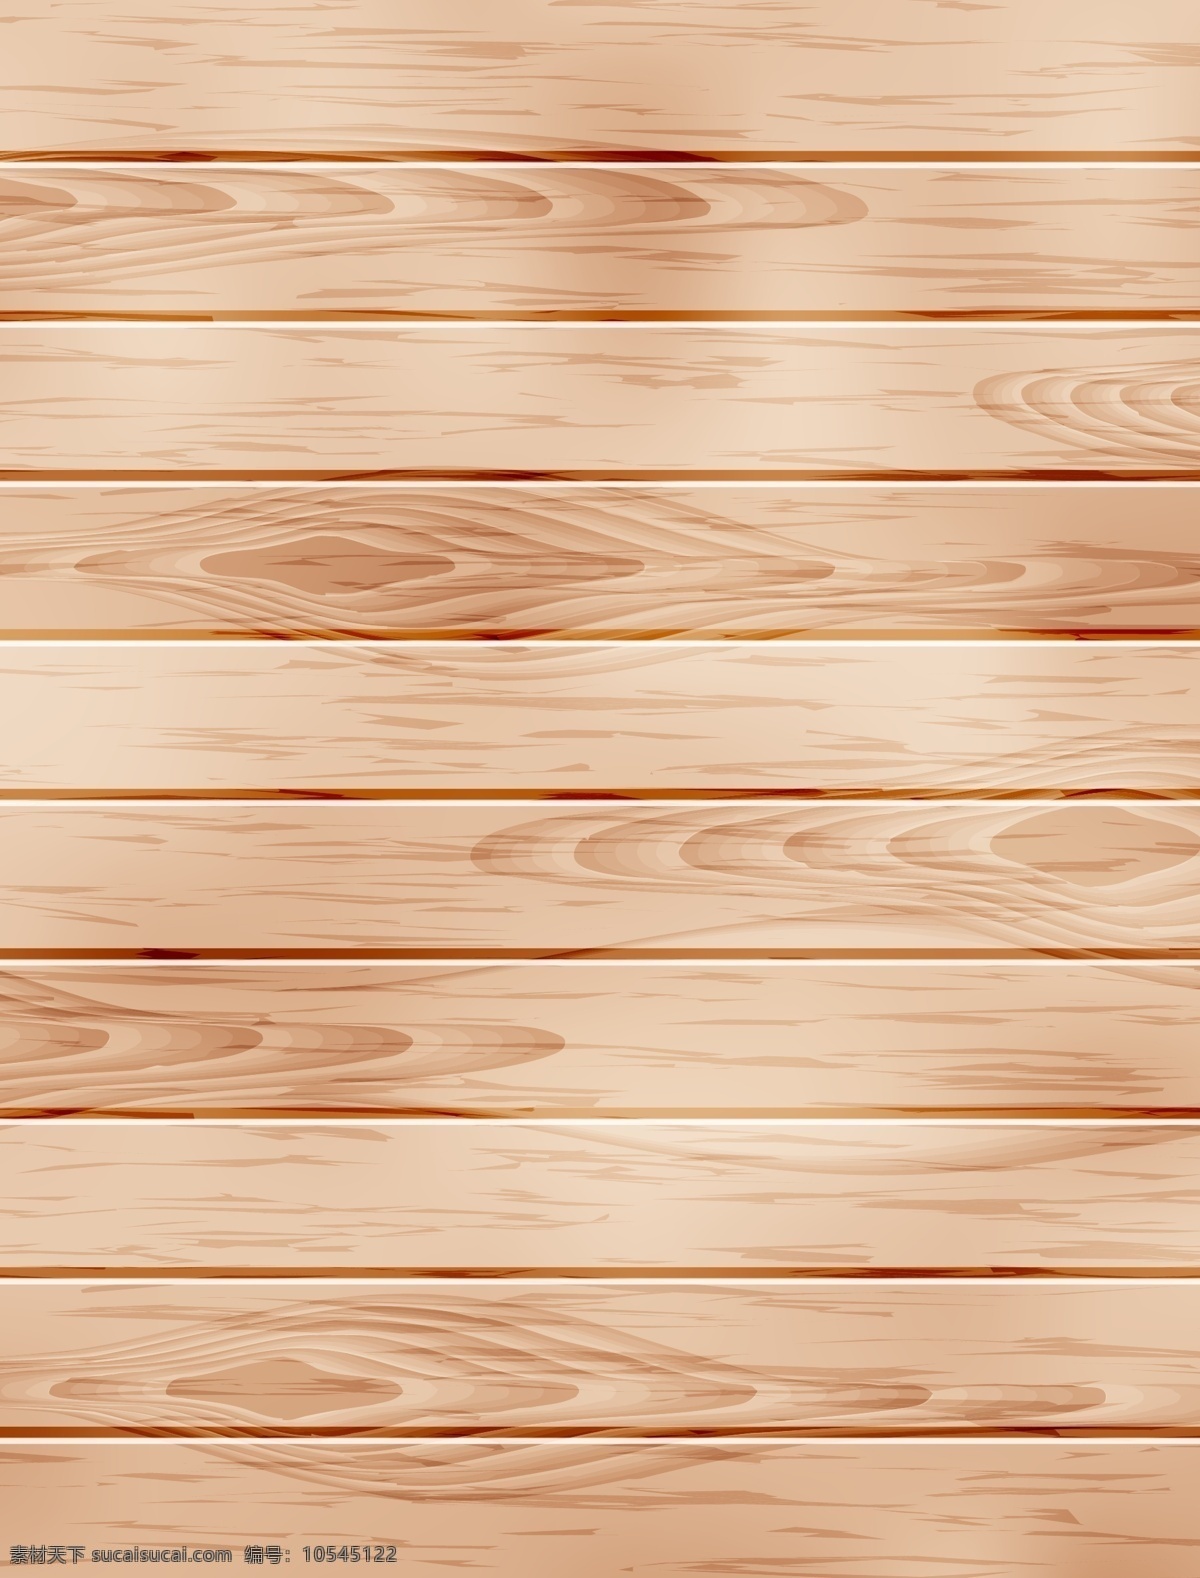 矢量 逼真 质感 木质 纹理 背景 黄色 木纹 木板 木质纹理